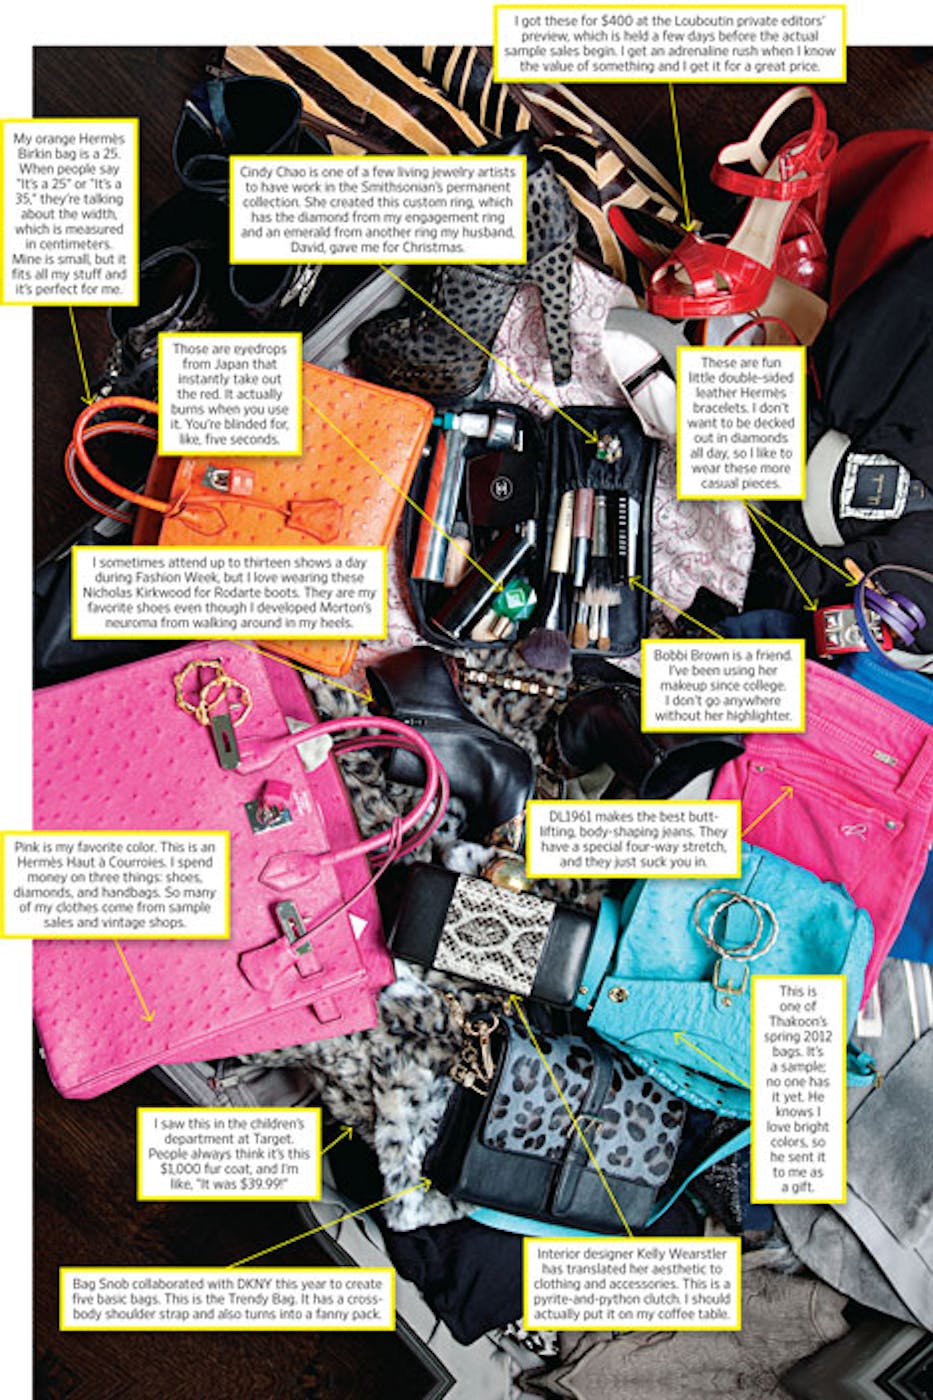 DKNY bag real vs fake. How to spot fake Donna Karan New York bags